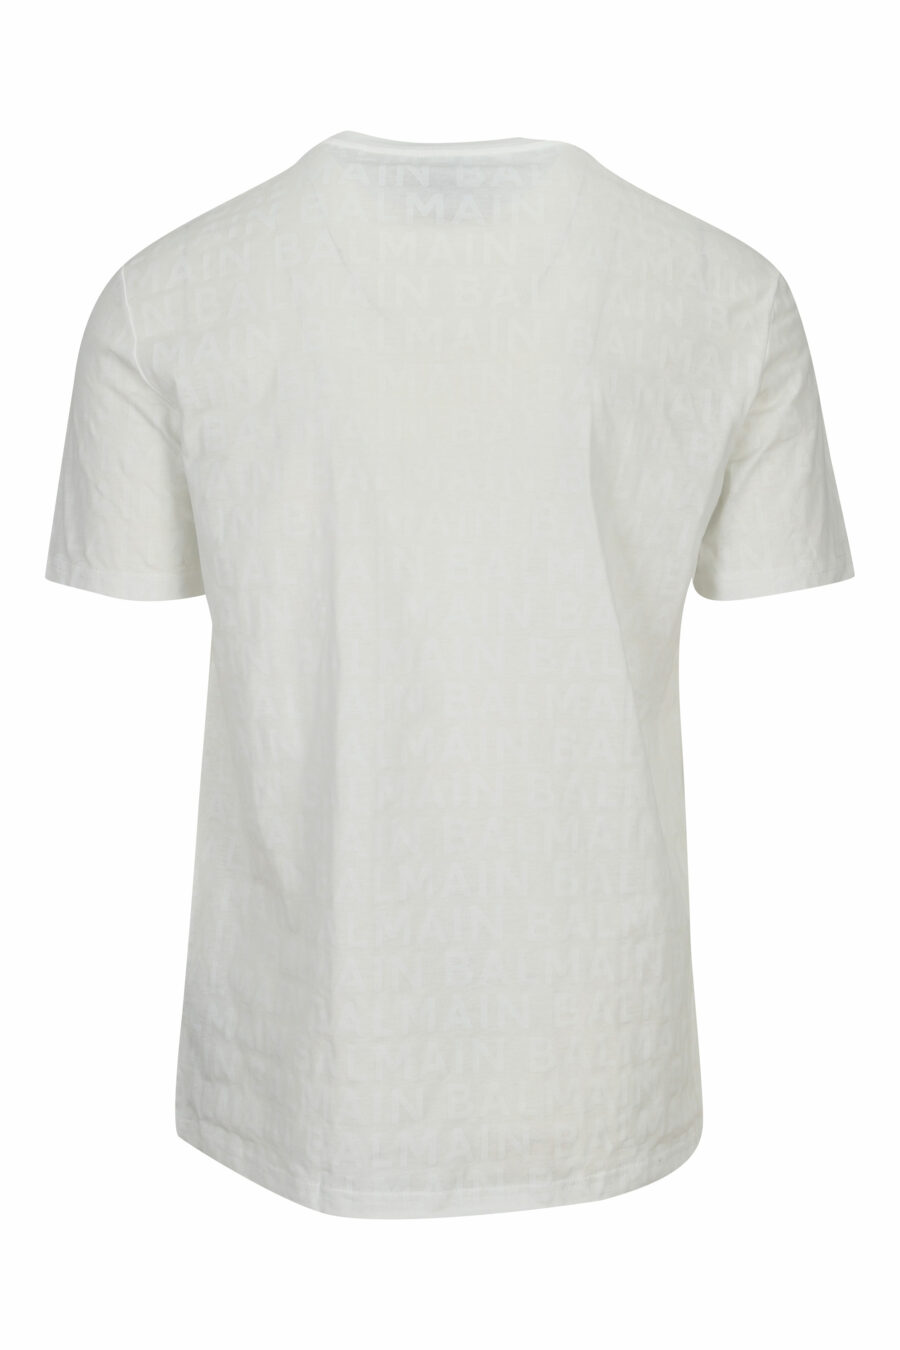 Weißes T-Shirt mit monochromem Monogramm - 8032674525390 1